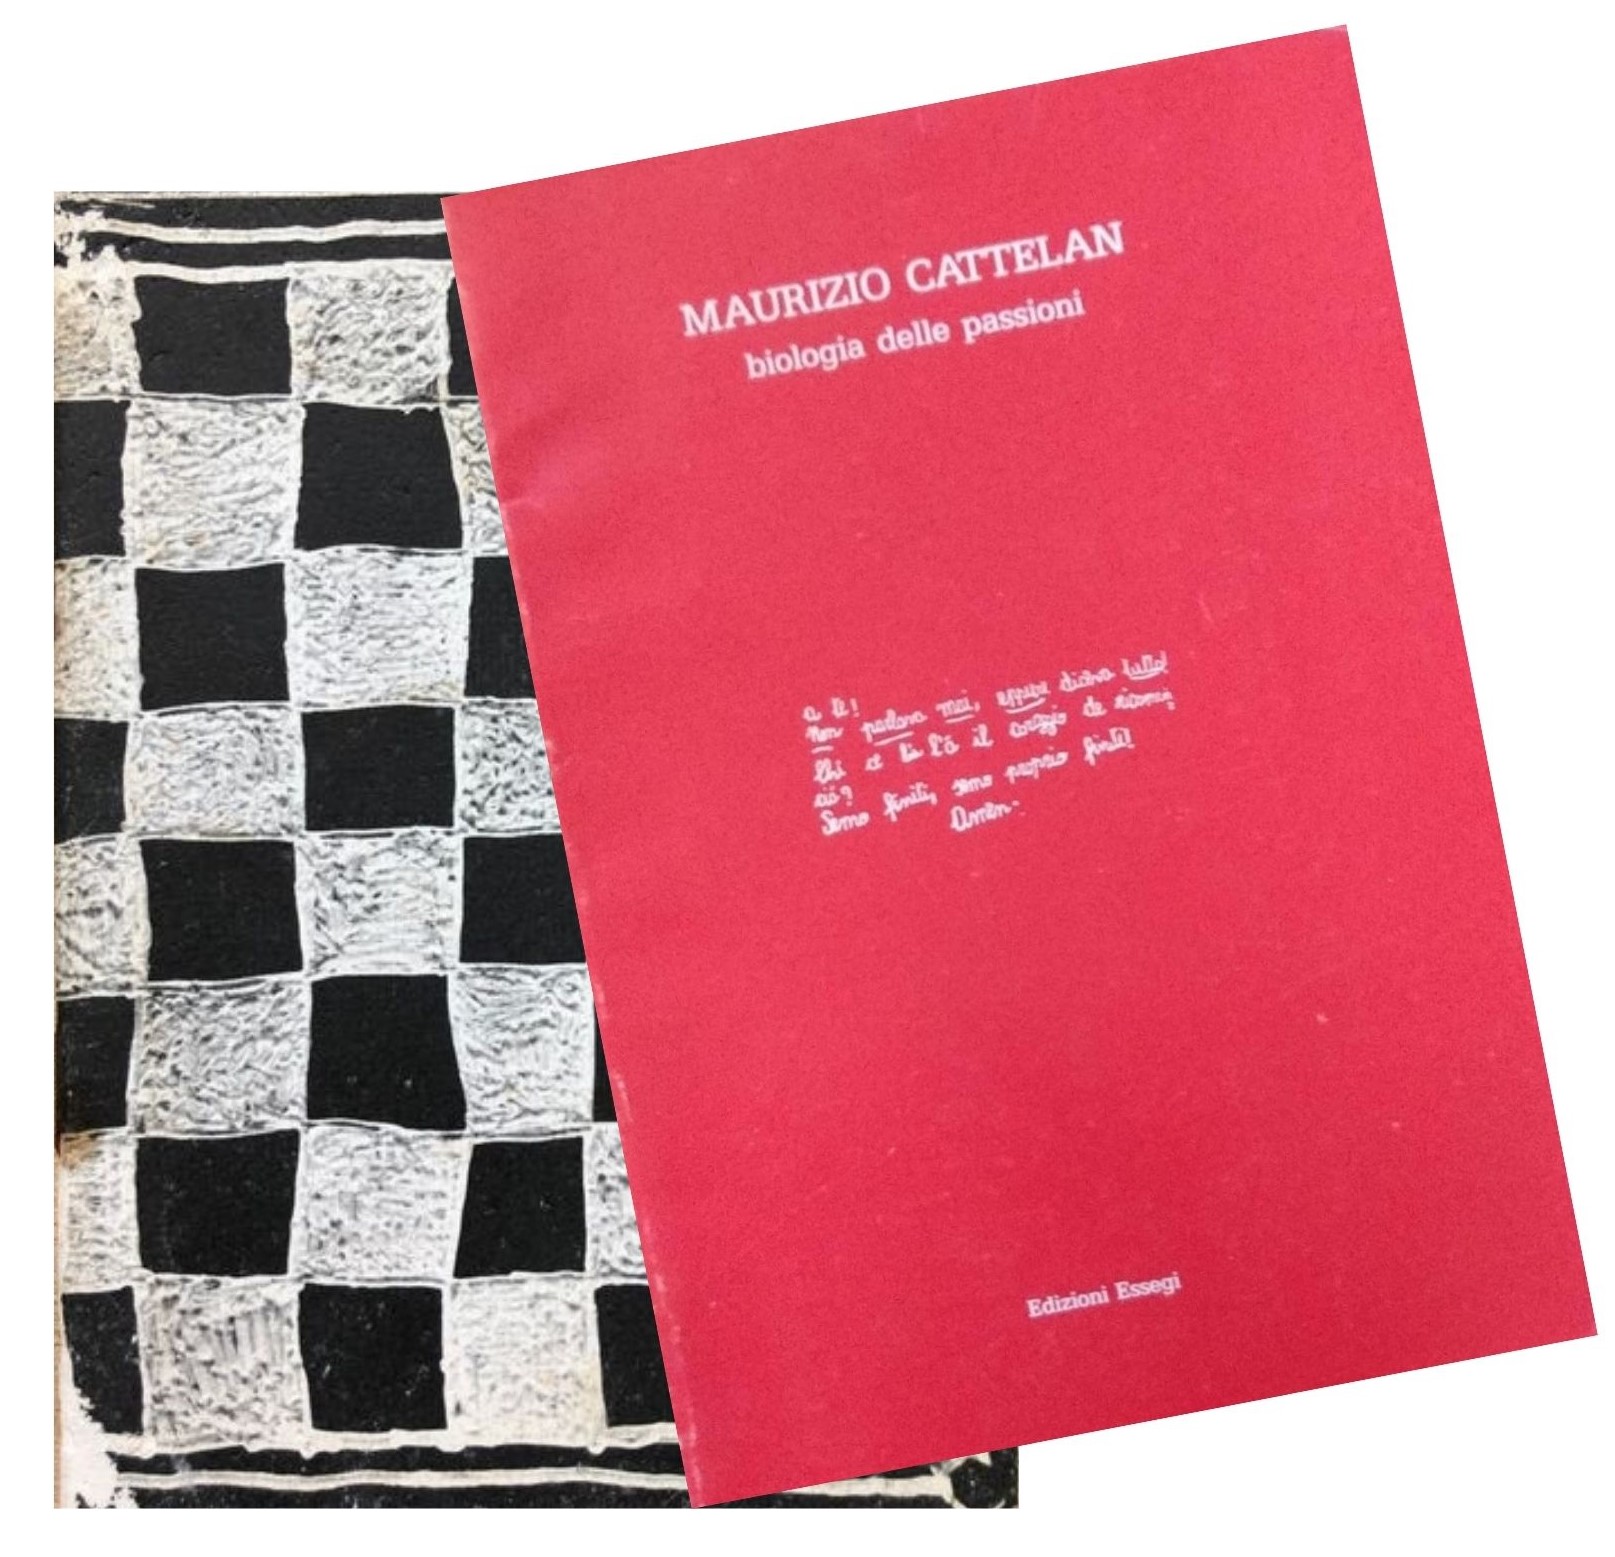 Le prime due rarissime pubblicazioni dell’artista Maurizio Cattelan (1988 e 1989)